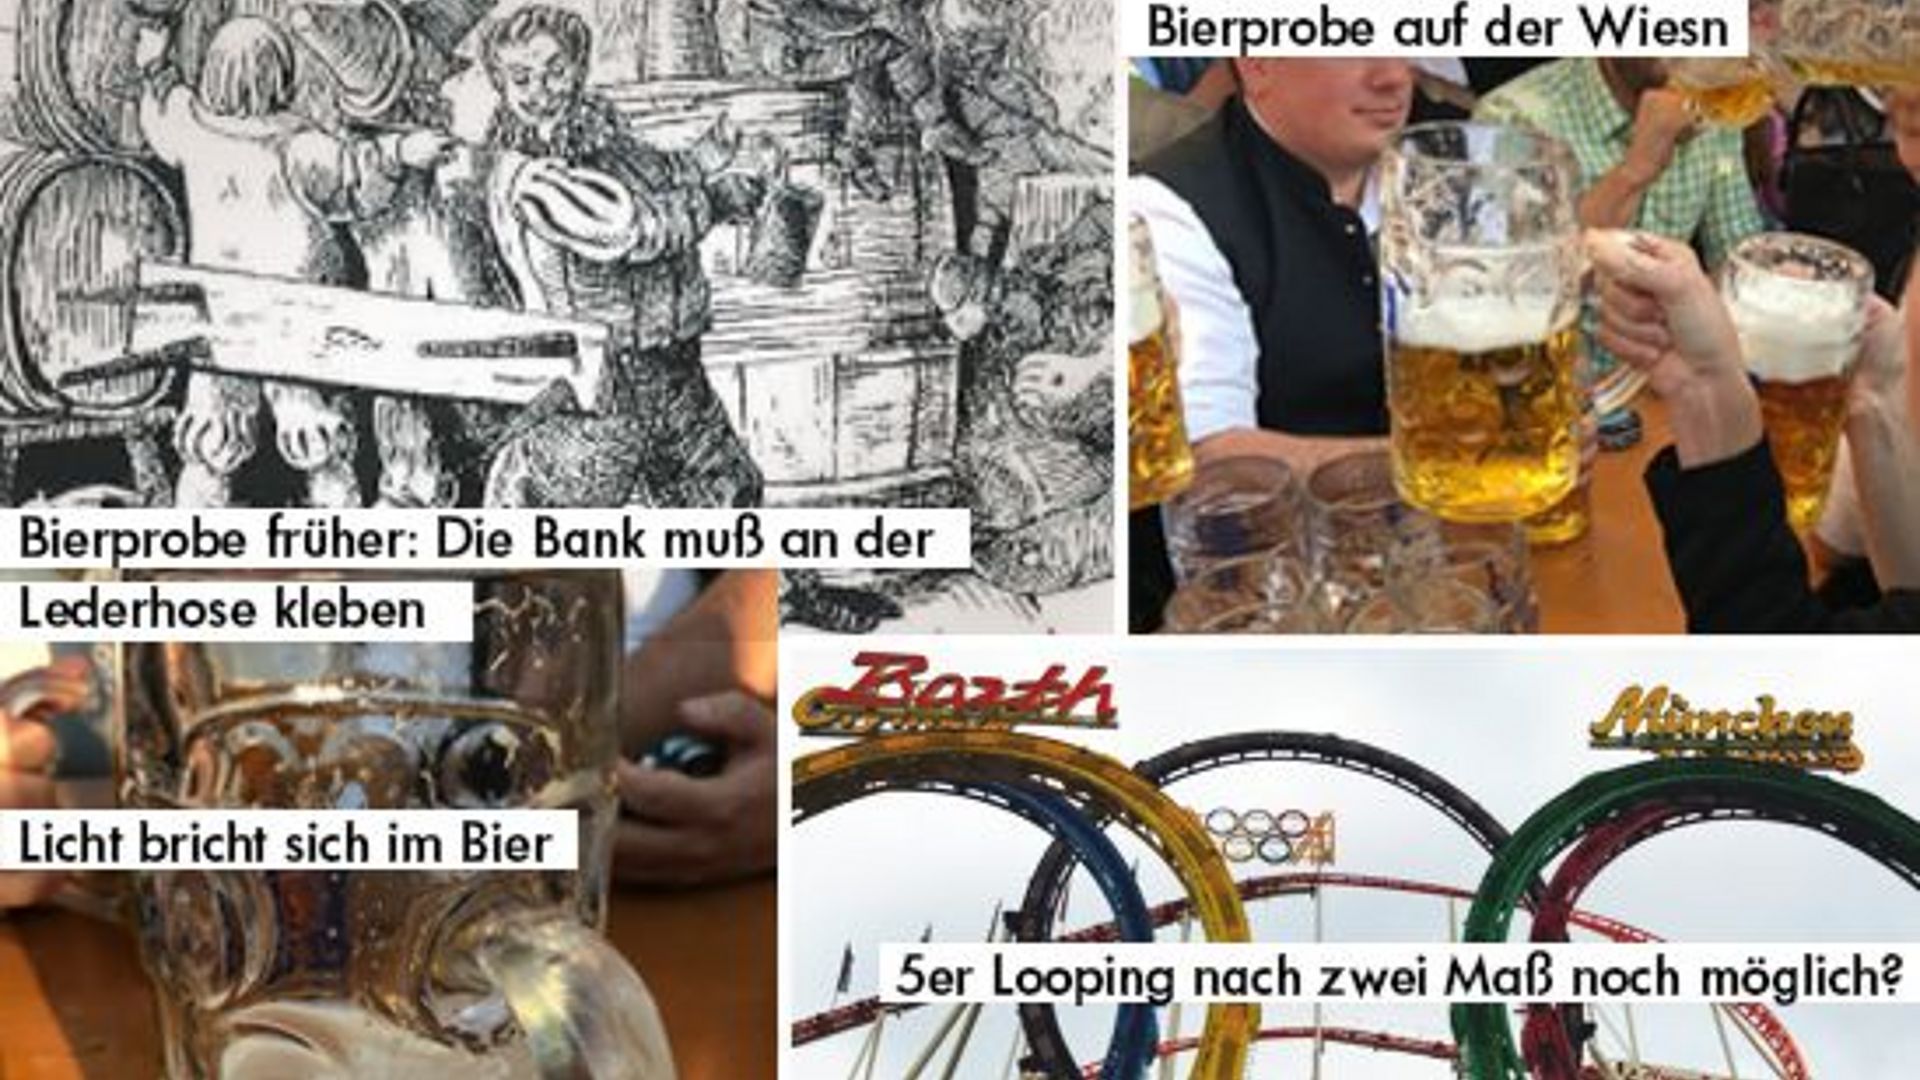 Kollage aus vier Bildern, die verschiedene Arten einer Bierprobe zeigen.